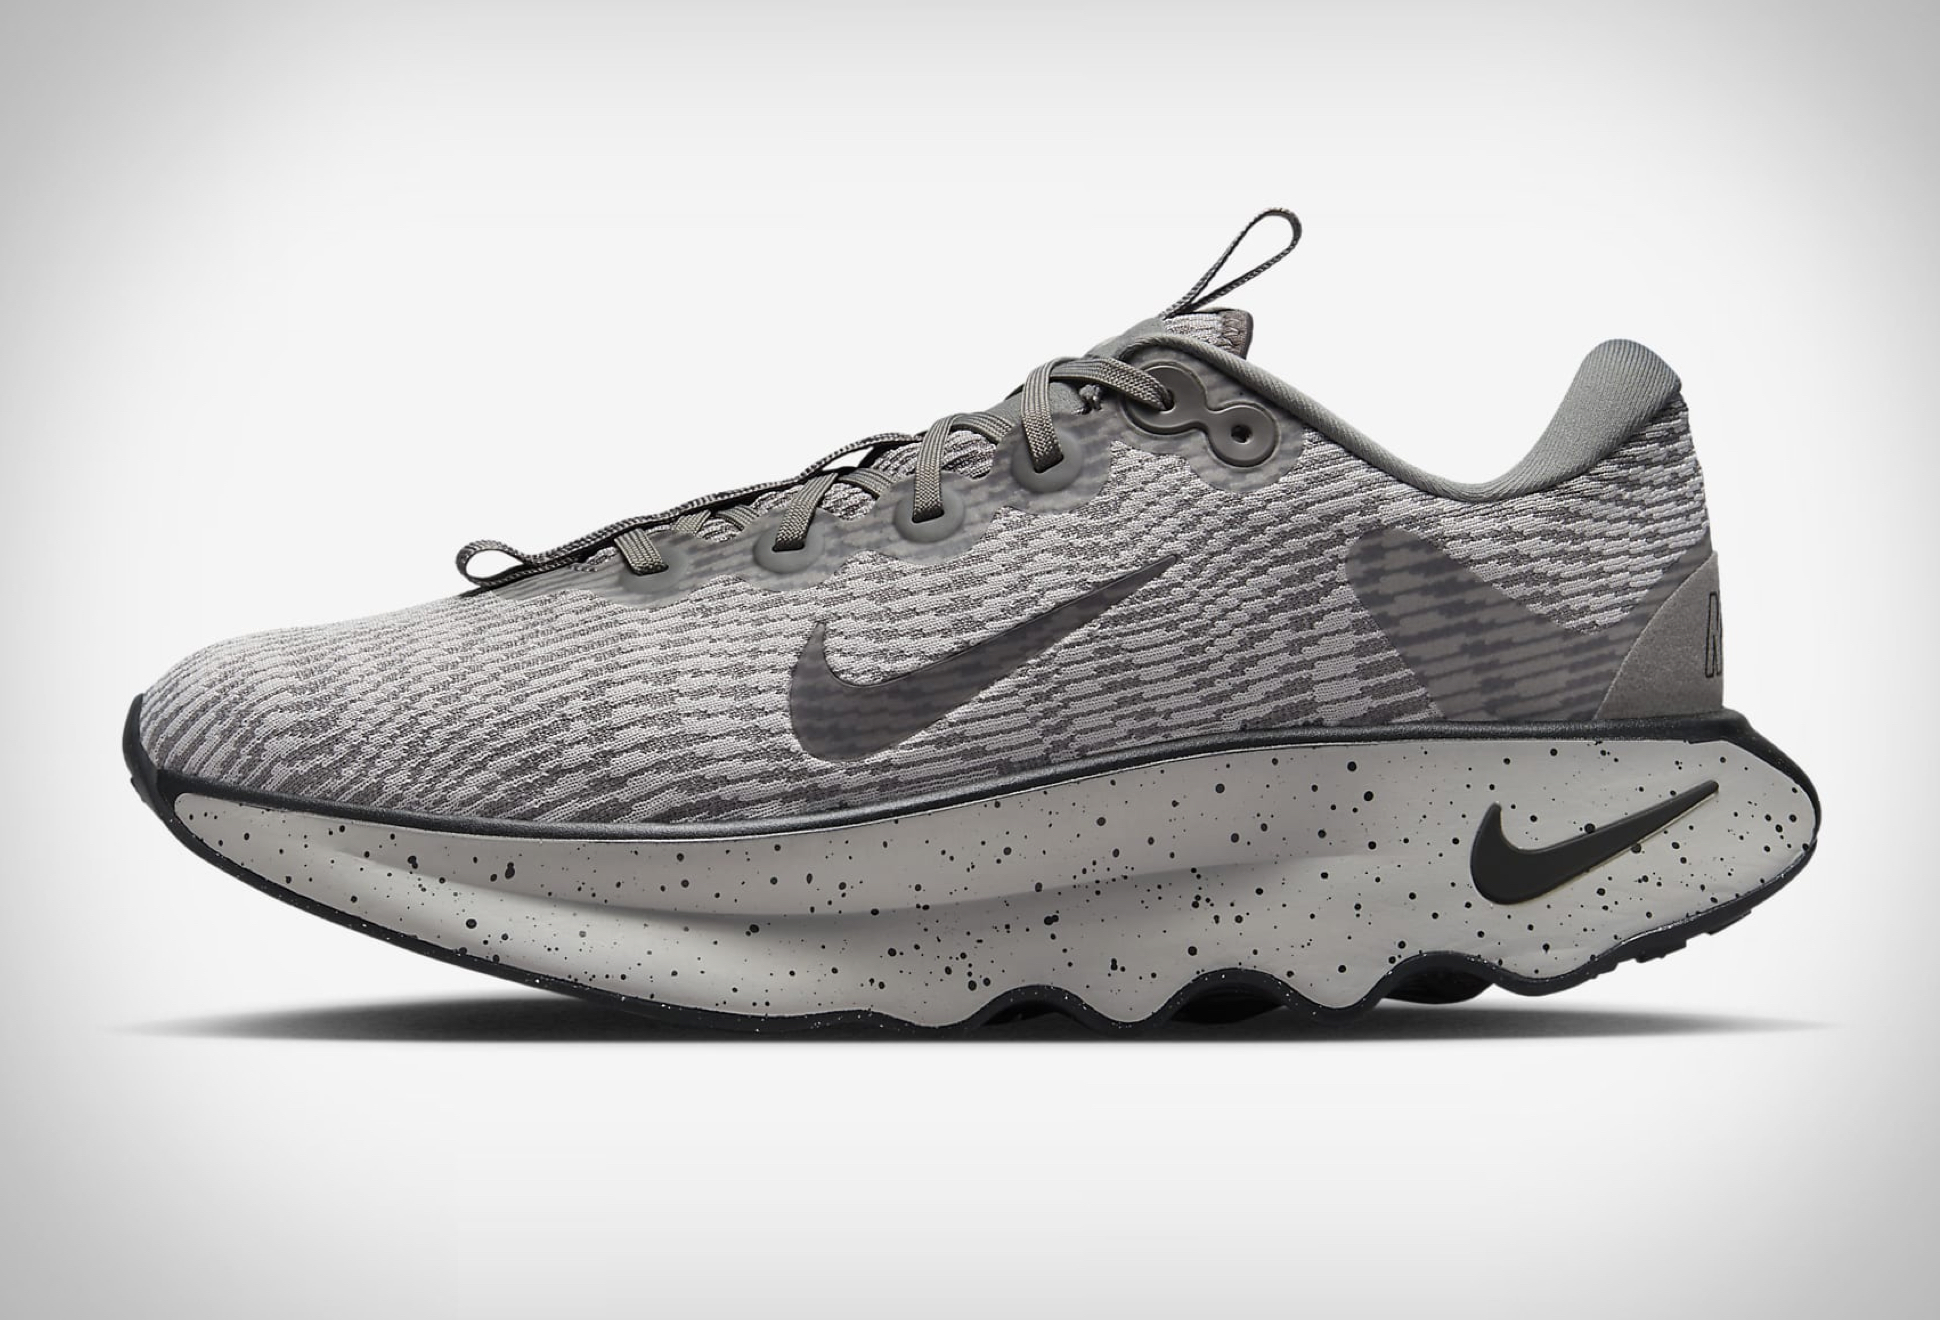 Nike Motiva Walking Shoes | Image